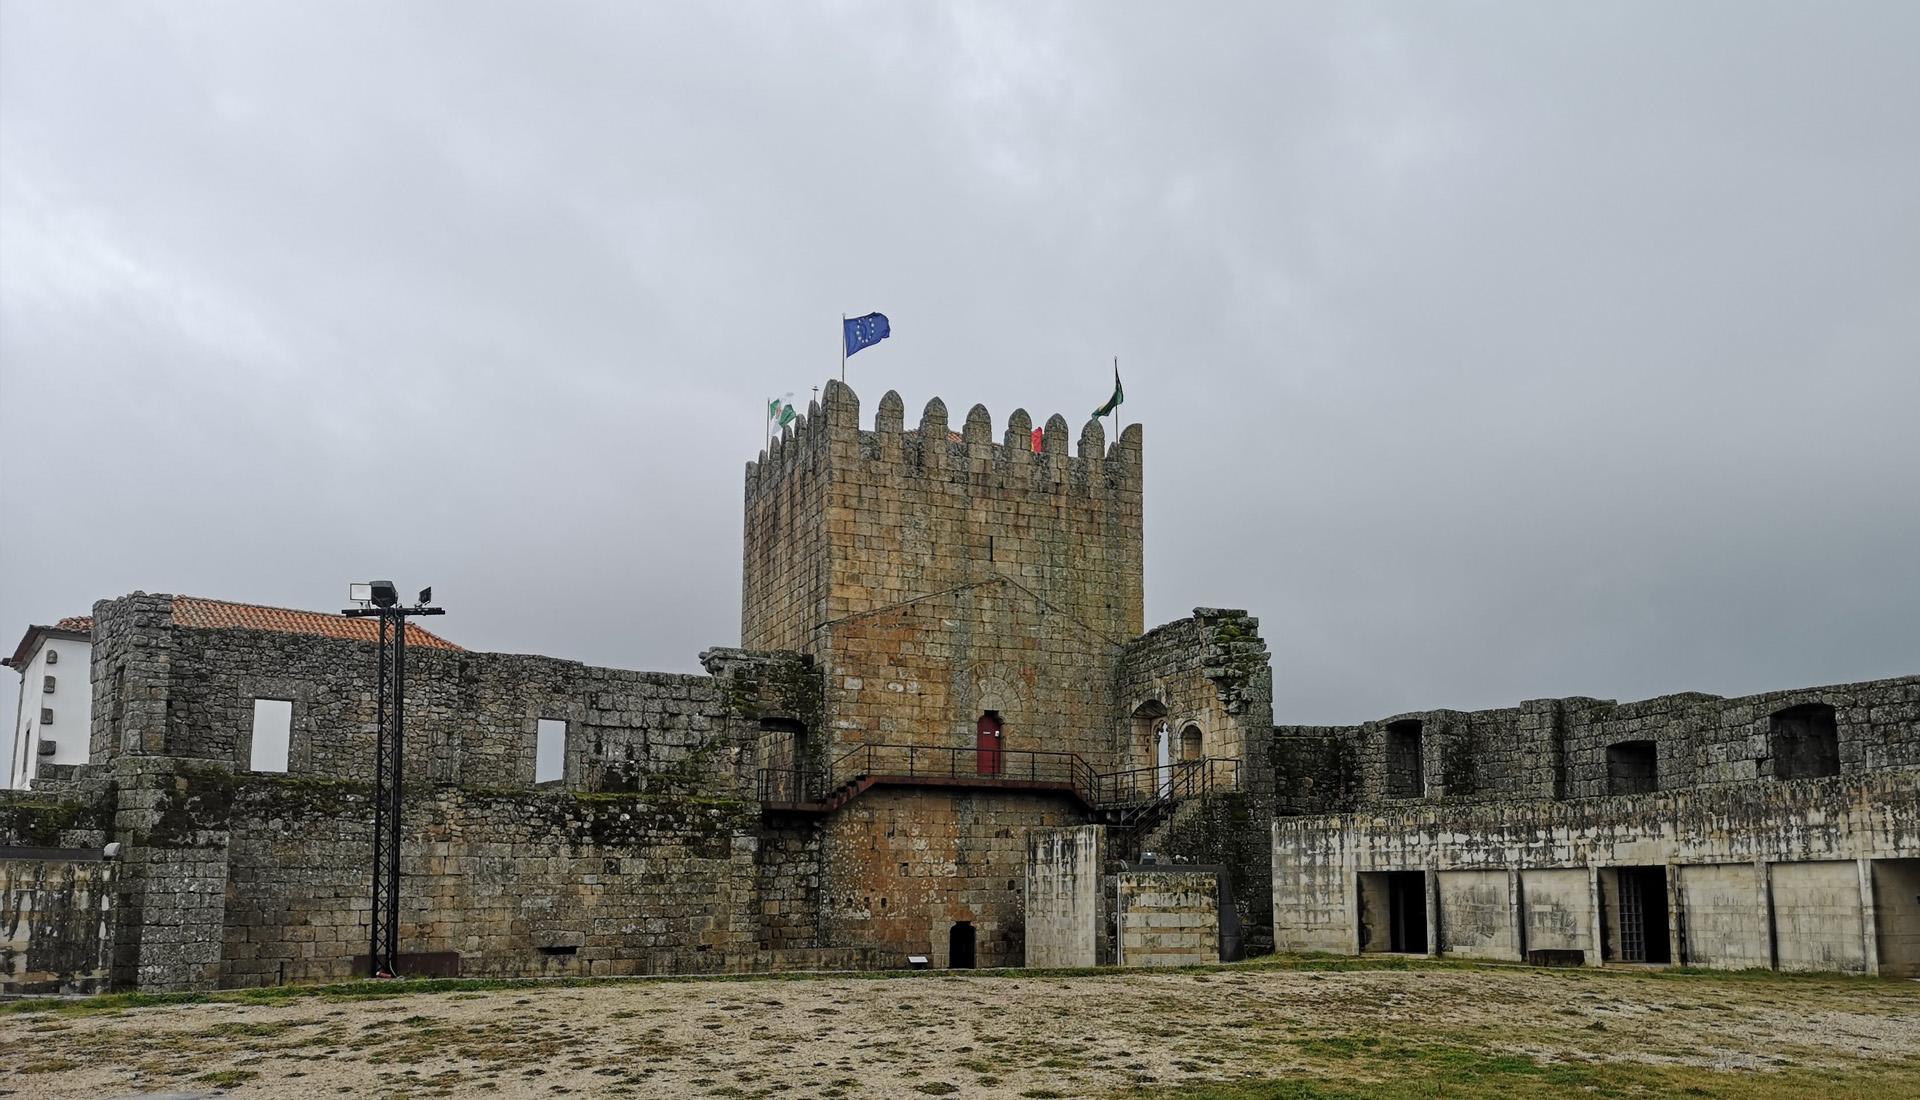 Aldeias Históricas - Belmonte - Sortelha - Castelo Novo - Passeios Turísticos  - Beira Baixa